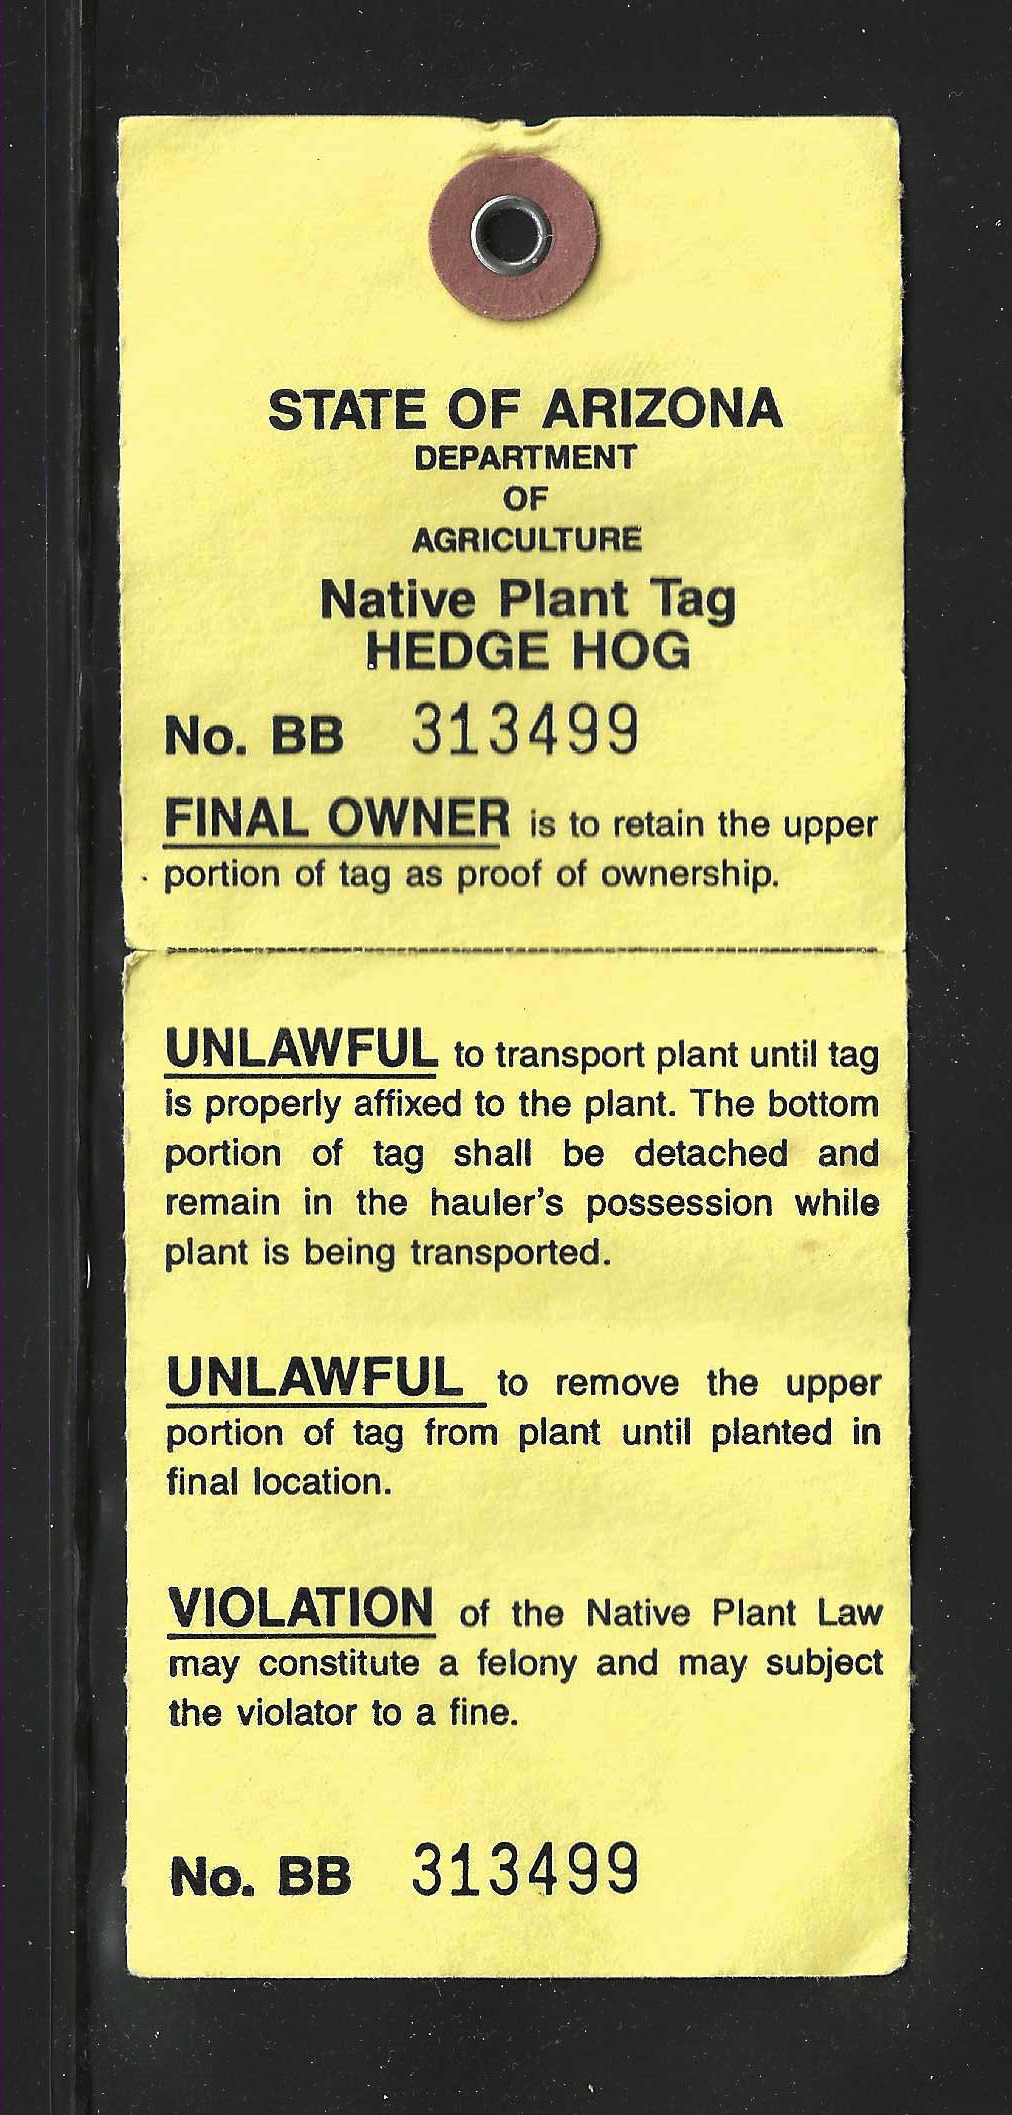 AZ native plant tag NPT14 hedge hog U VF